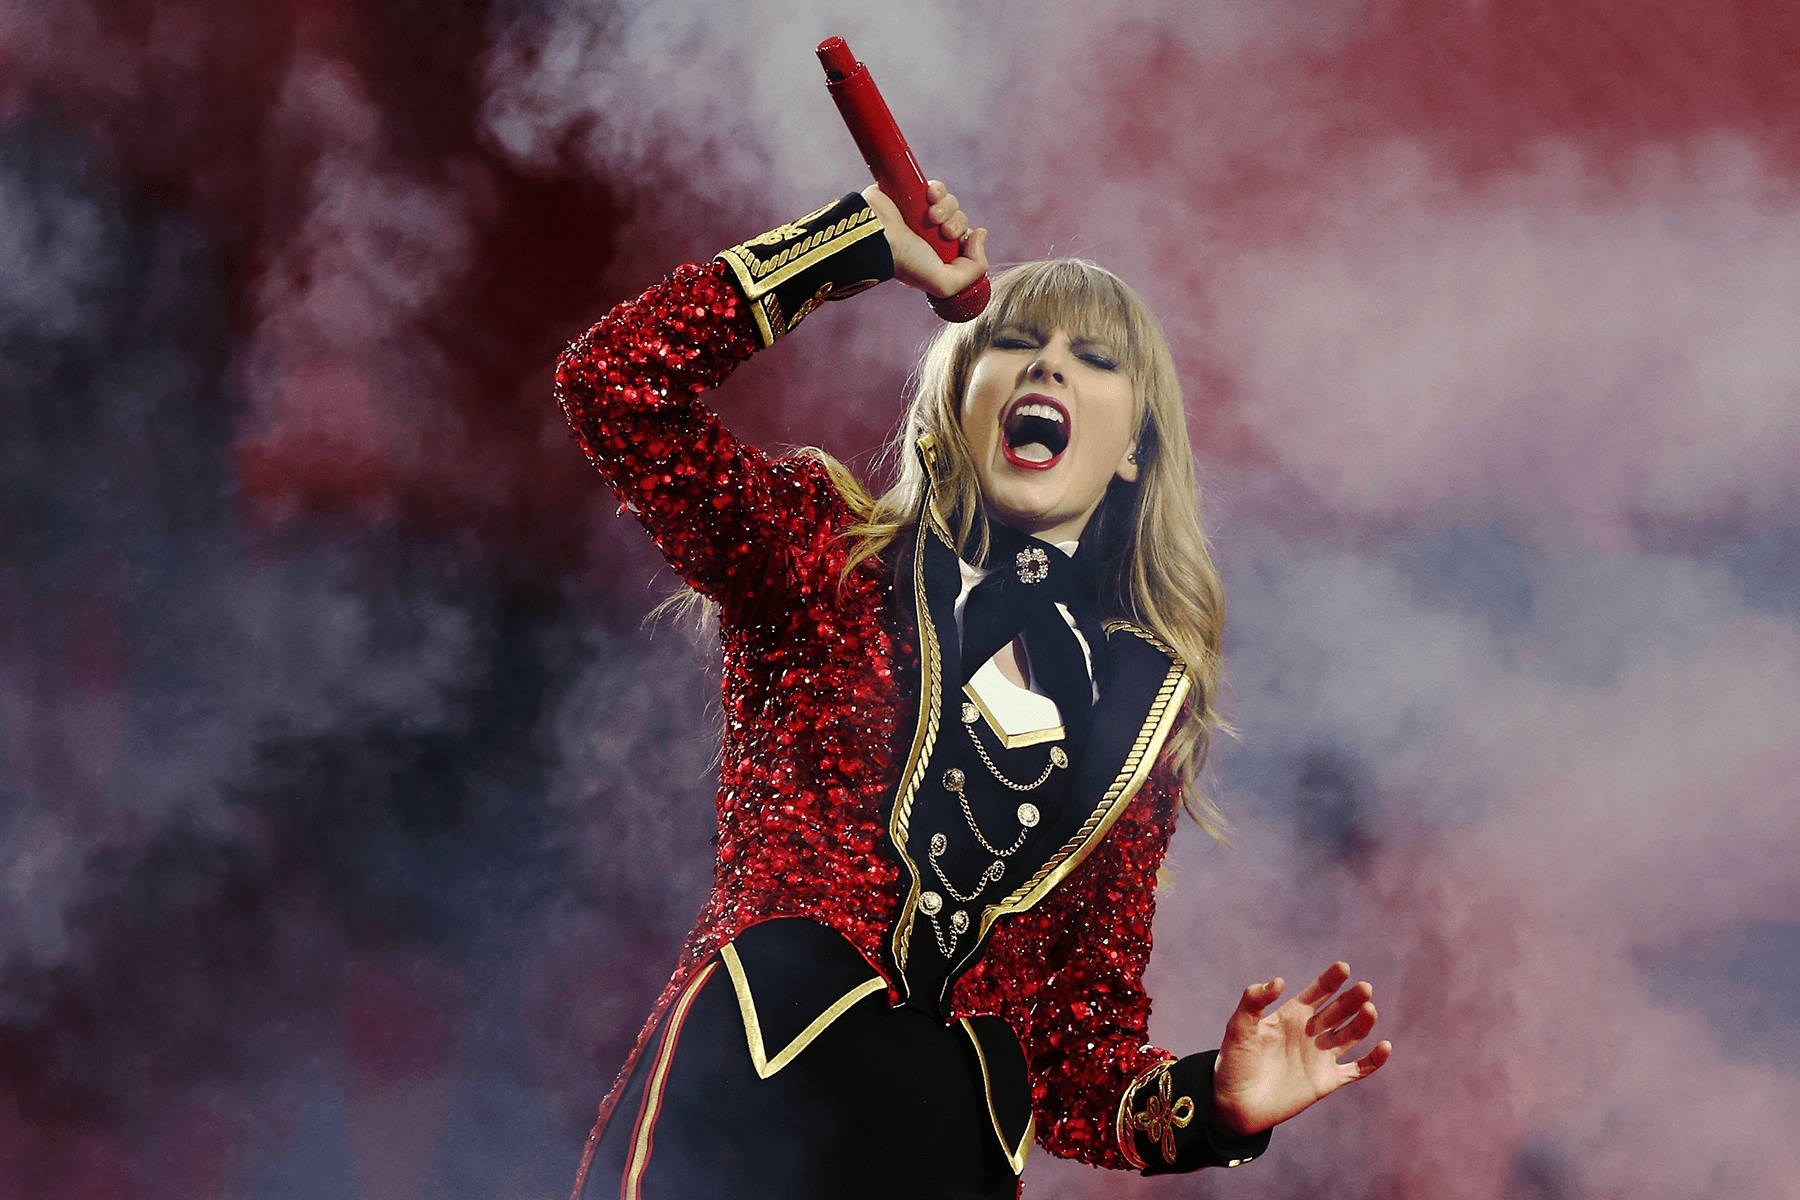 Ngày này nhắc lại: 9 năm trước, Taylor Swift phát hành album ‘Red’ thu về loạt thành tích khủng trong sự nghiệp - ảnh 3